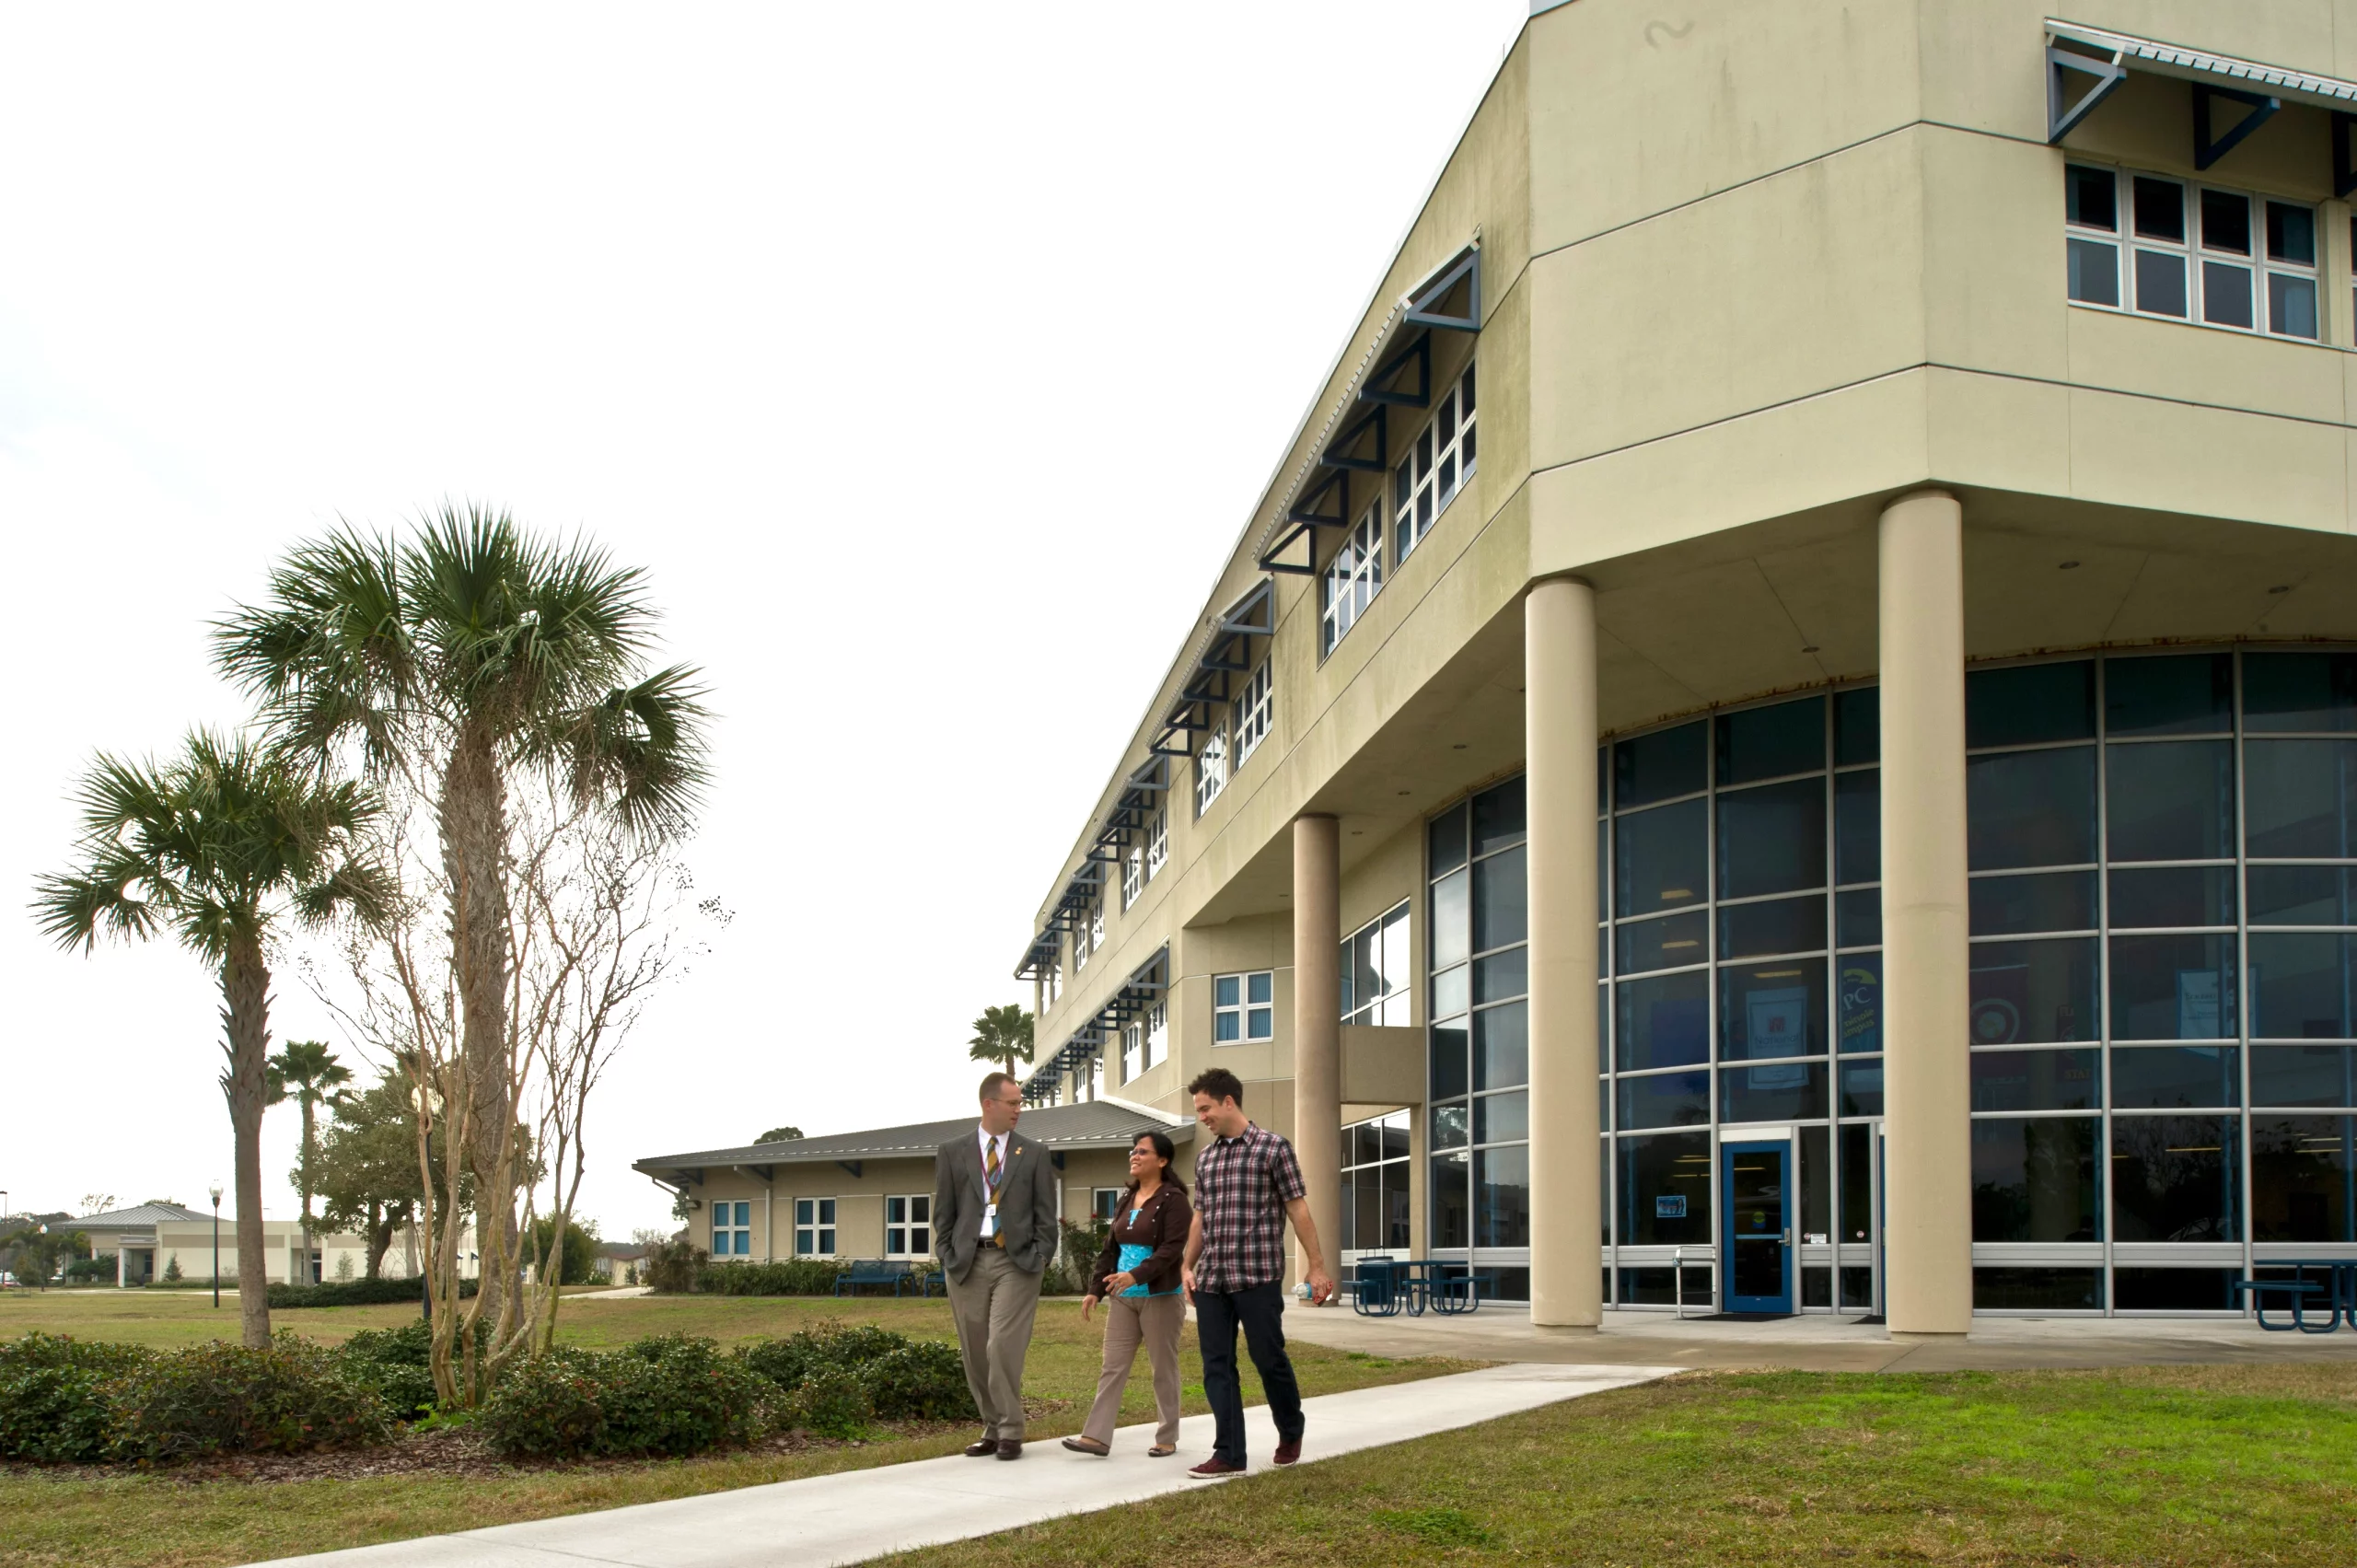 Explore our Florida Campus